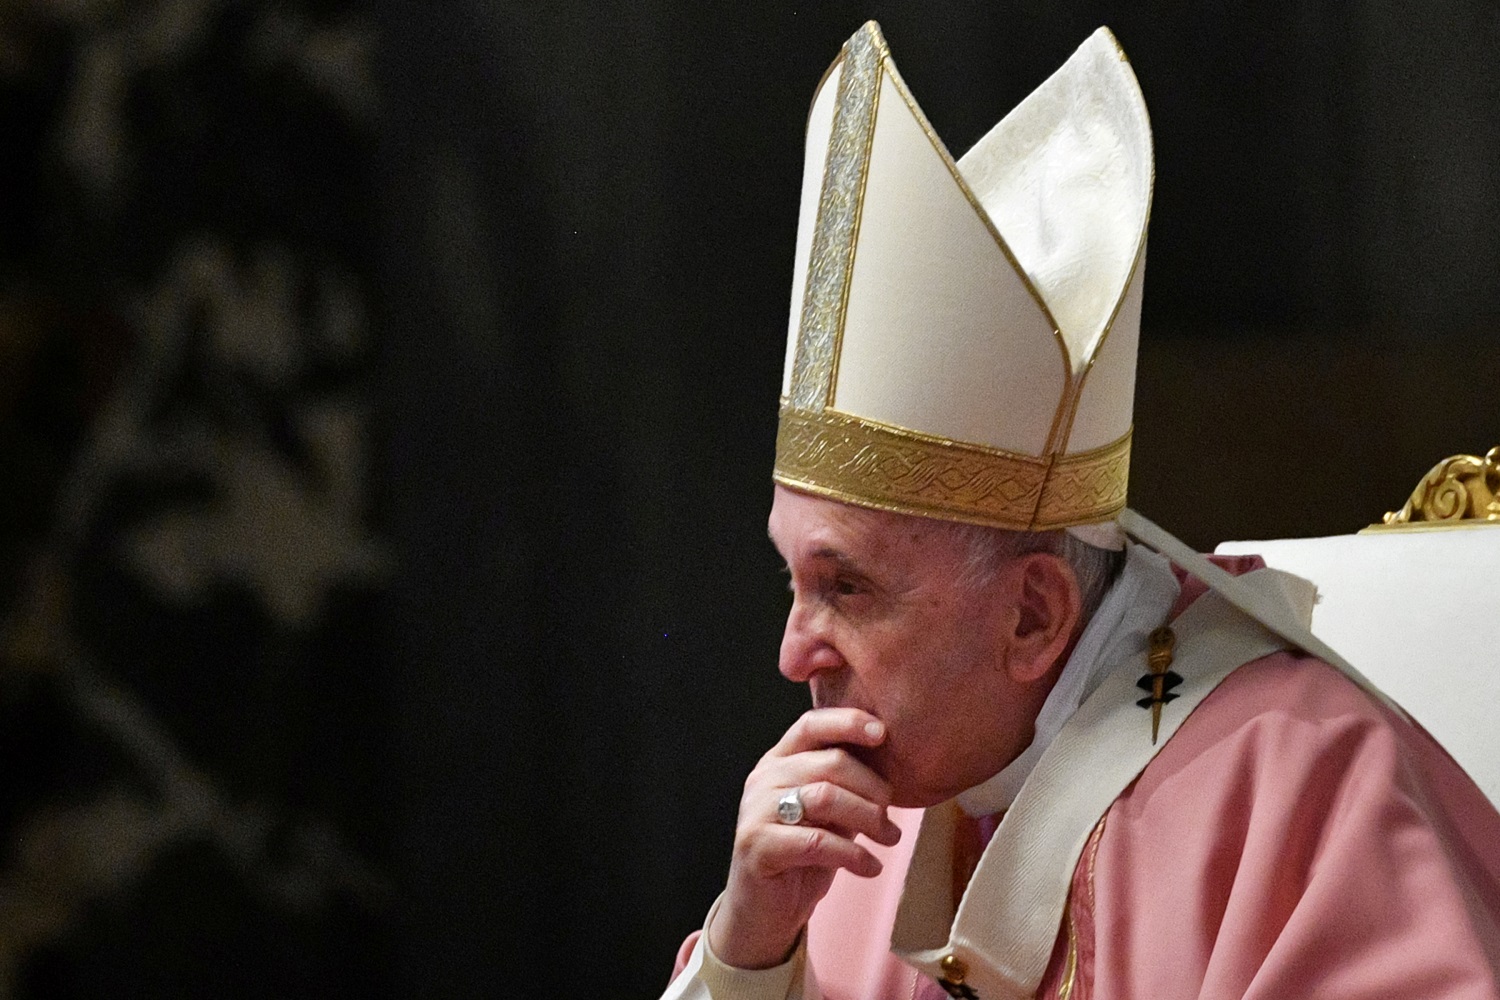 El papa Francisco denuncia que las mafias están explotando la pandemia